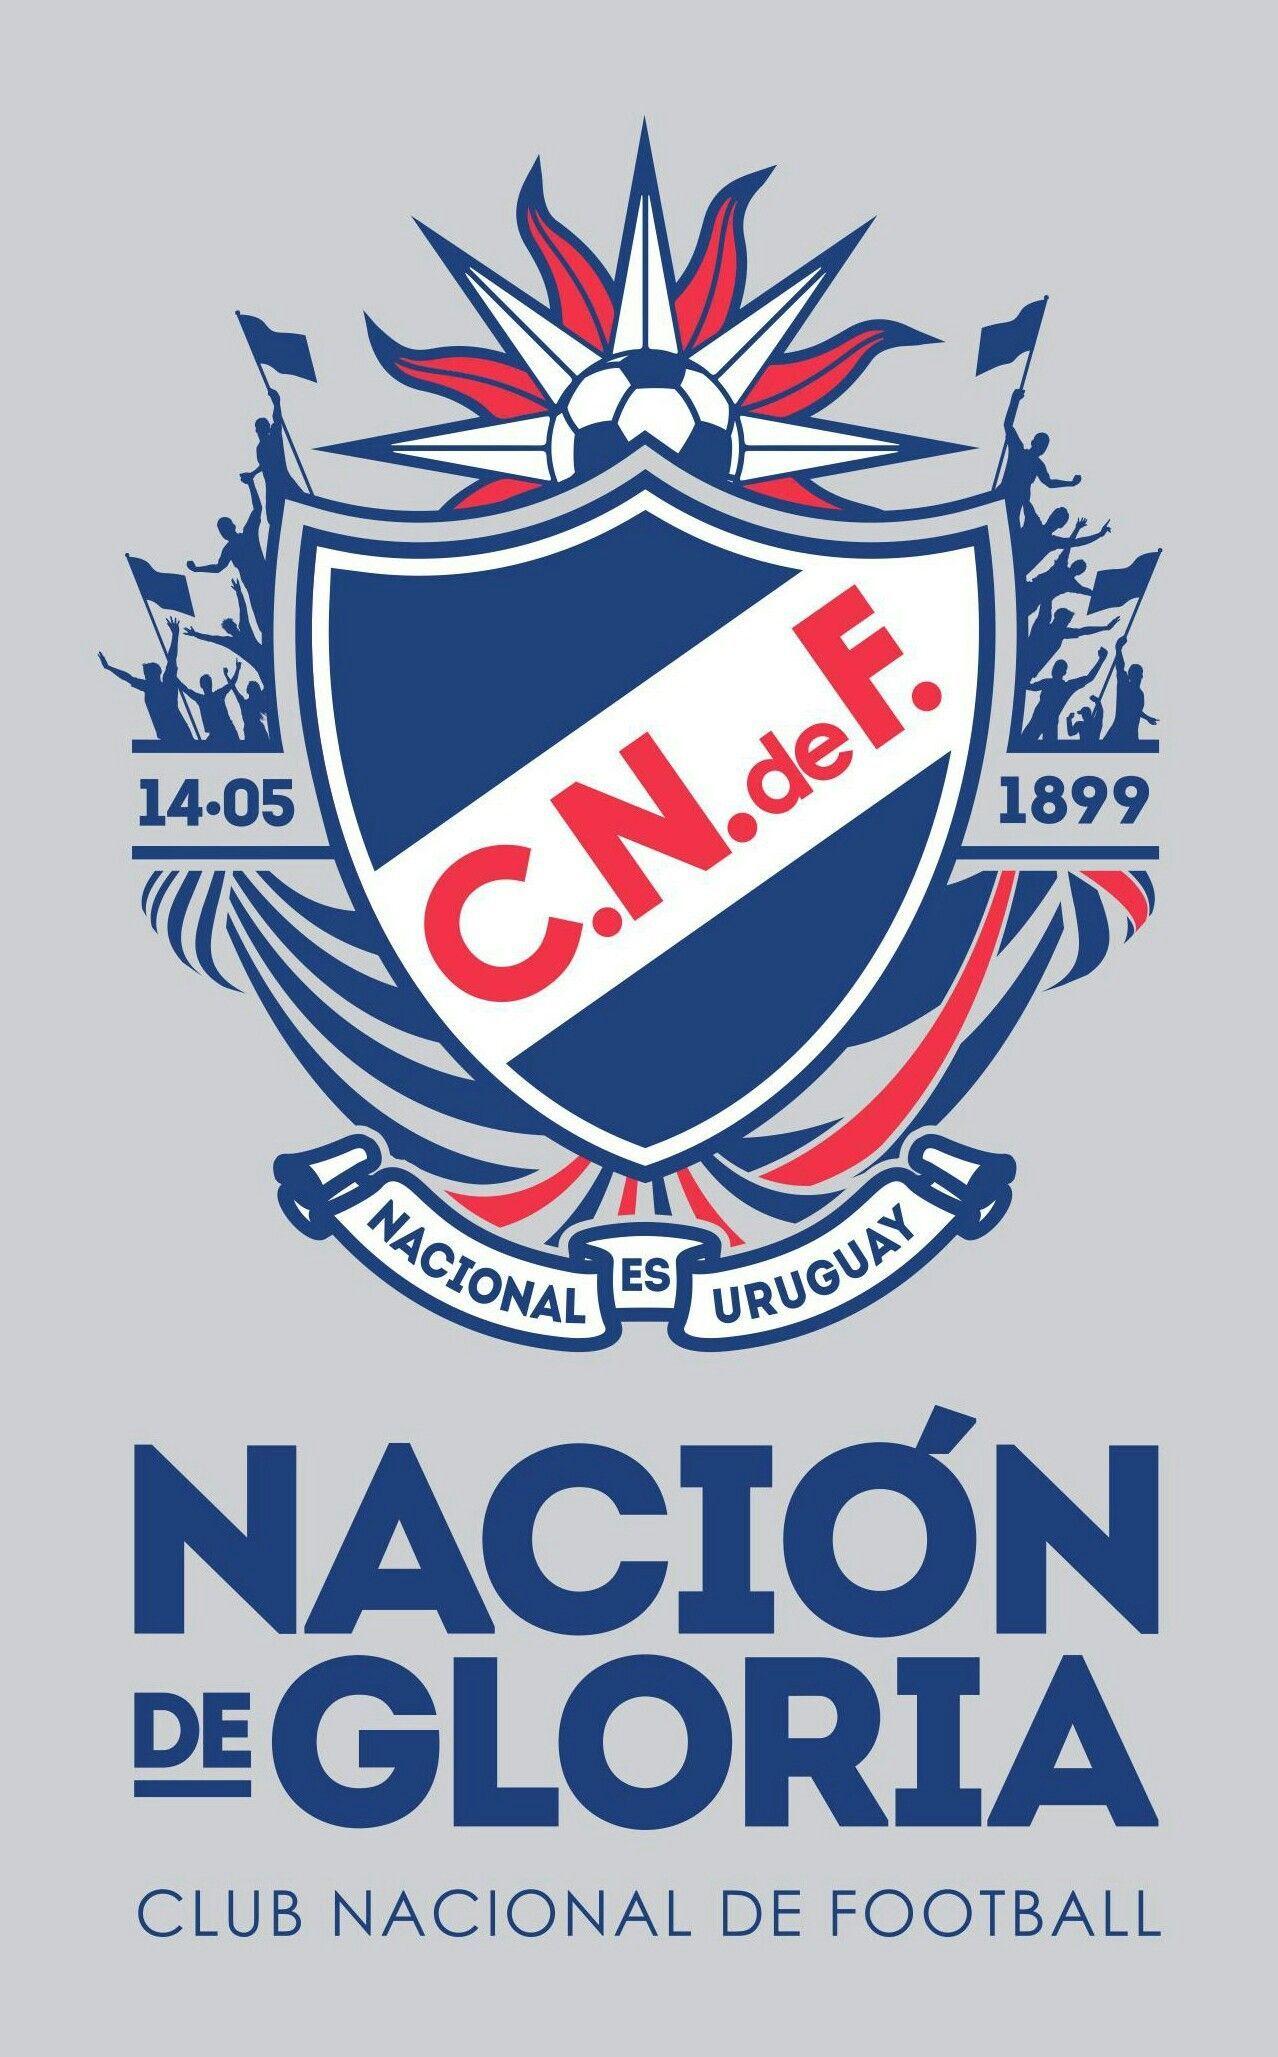 Club Nacional de fútbolón de Gloria. Fotboll